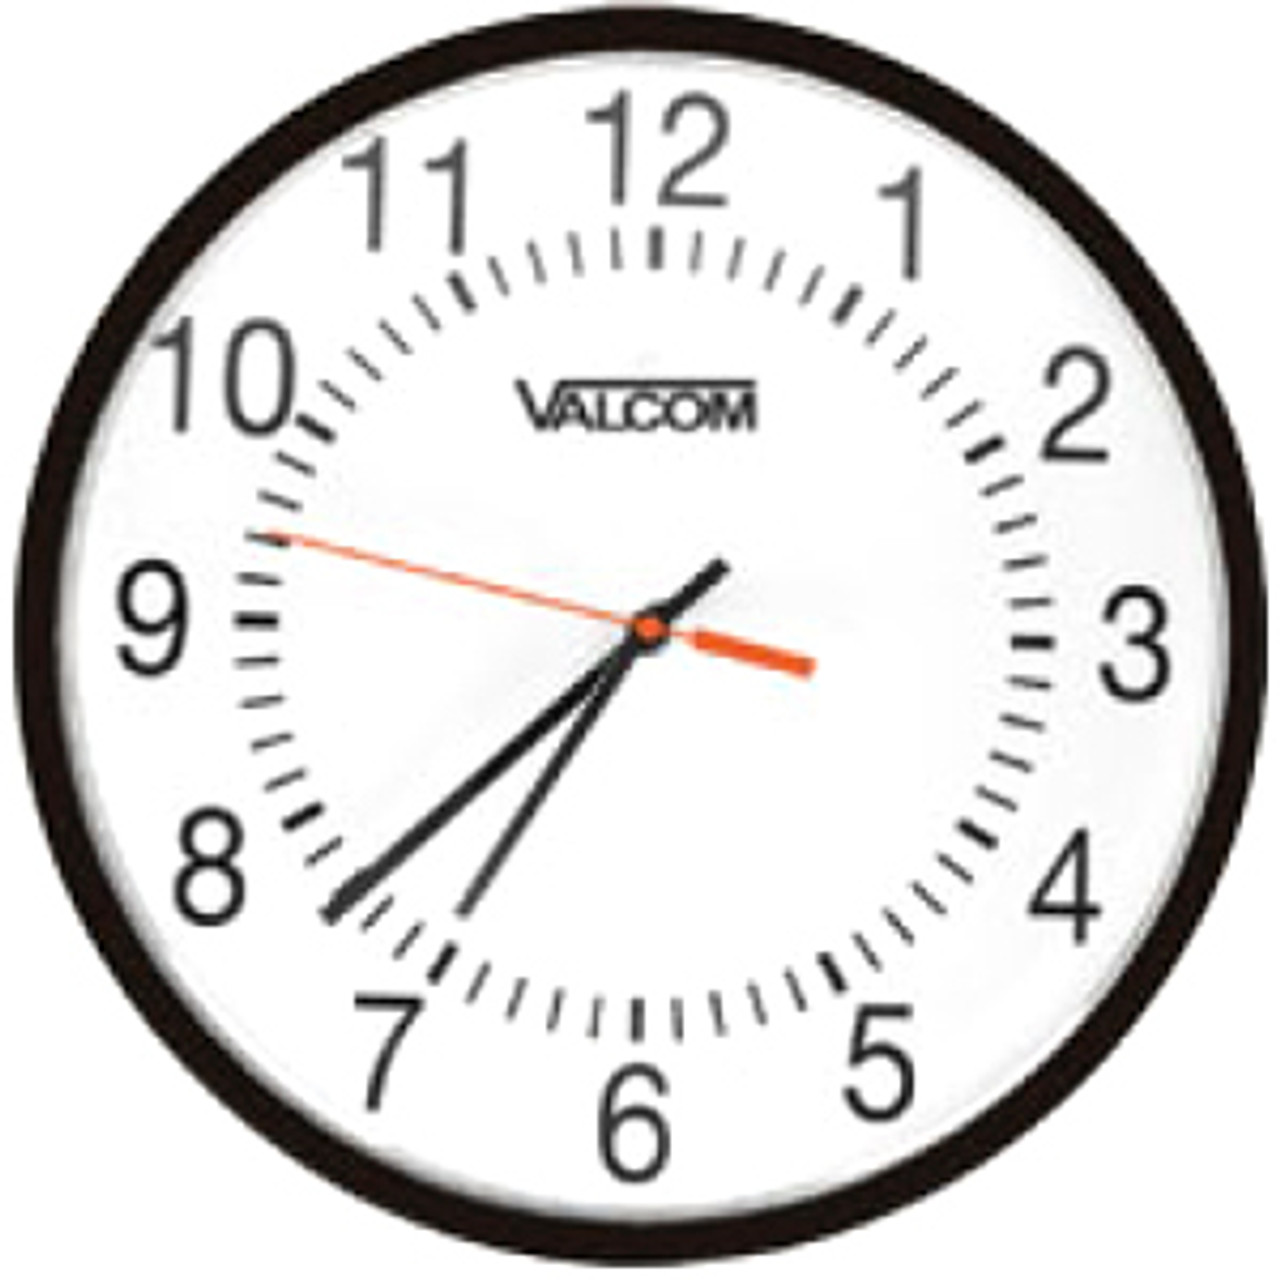 Valcom V-A11012